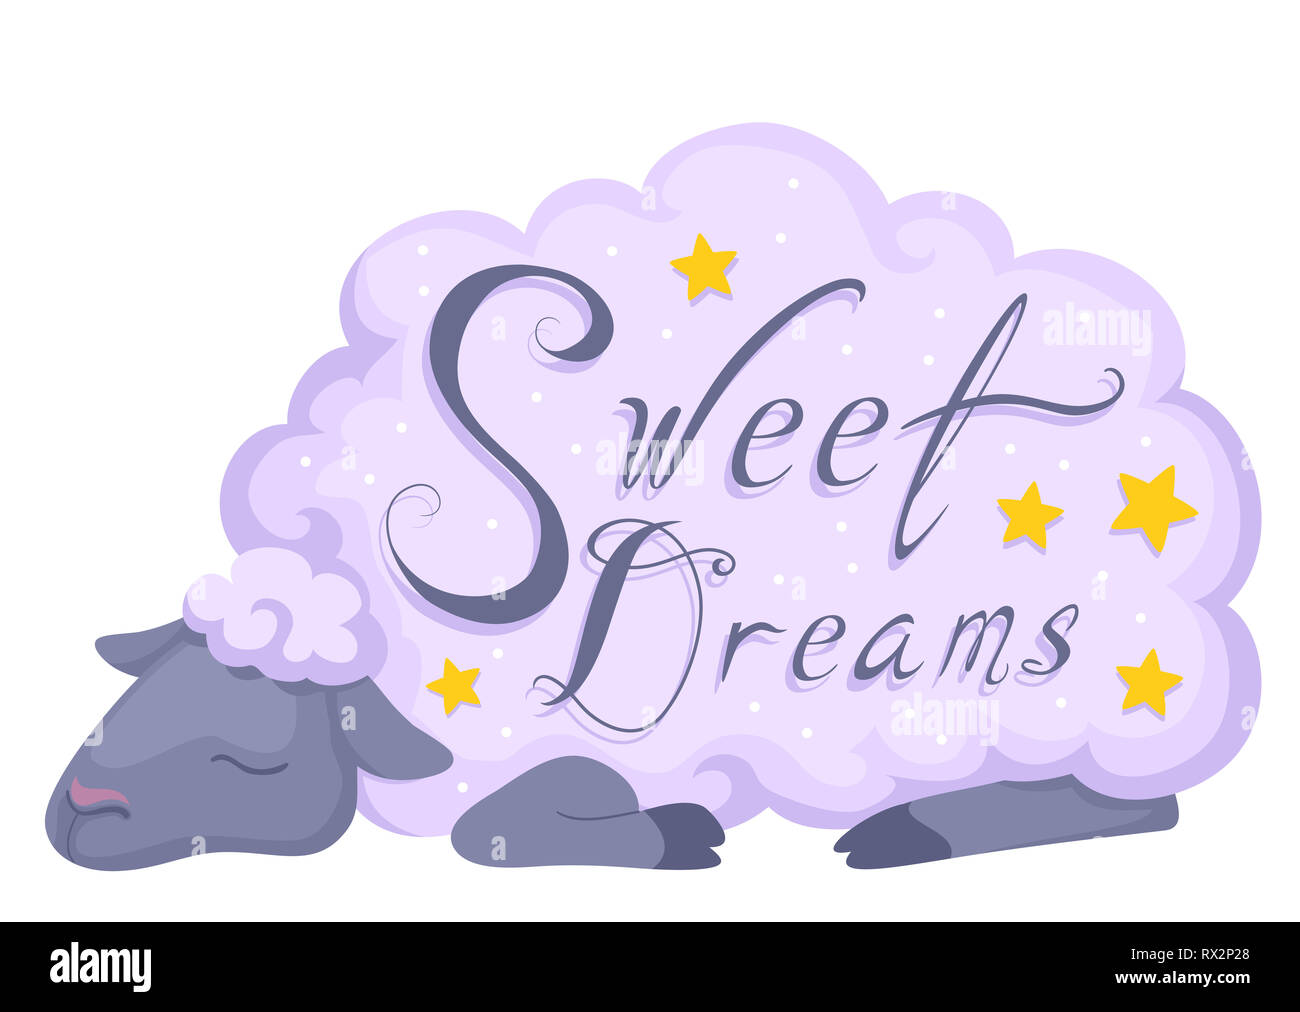 Ilustración de una oveja para dormir con dulces sueños Rotulación y estrellas Foto de stock